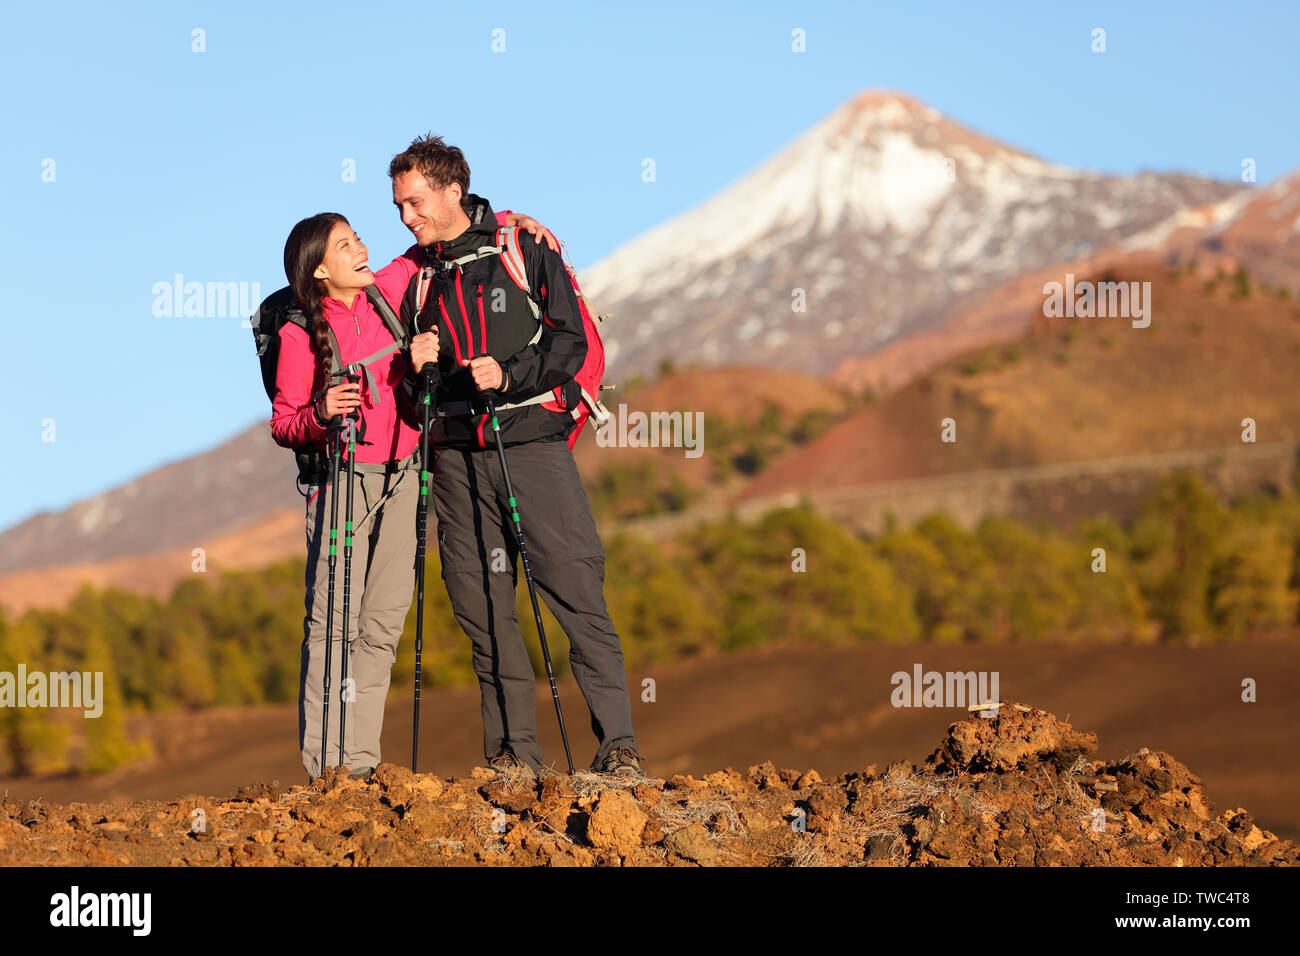 Gesunden, aktiven Lebensstil. Wanderer Menschen Wandern in wunderschöner Natur Landschaft. Frau und Mann Wanderer Lachen ausruhen, Pause während der Wanderung auf den Vulkan Teide, Teneriffa, Kanarische Inseln, Spanien. Stockfoto